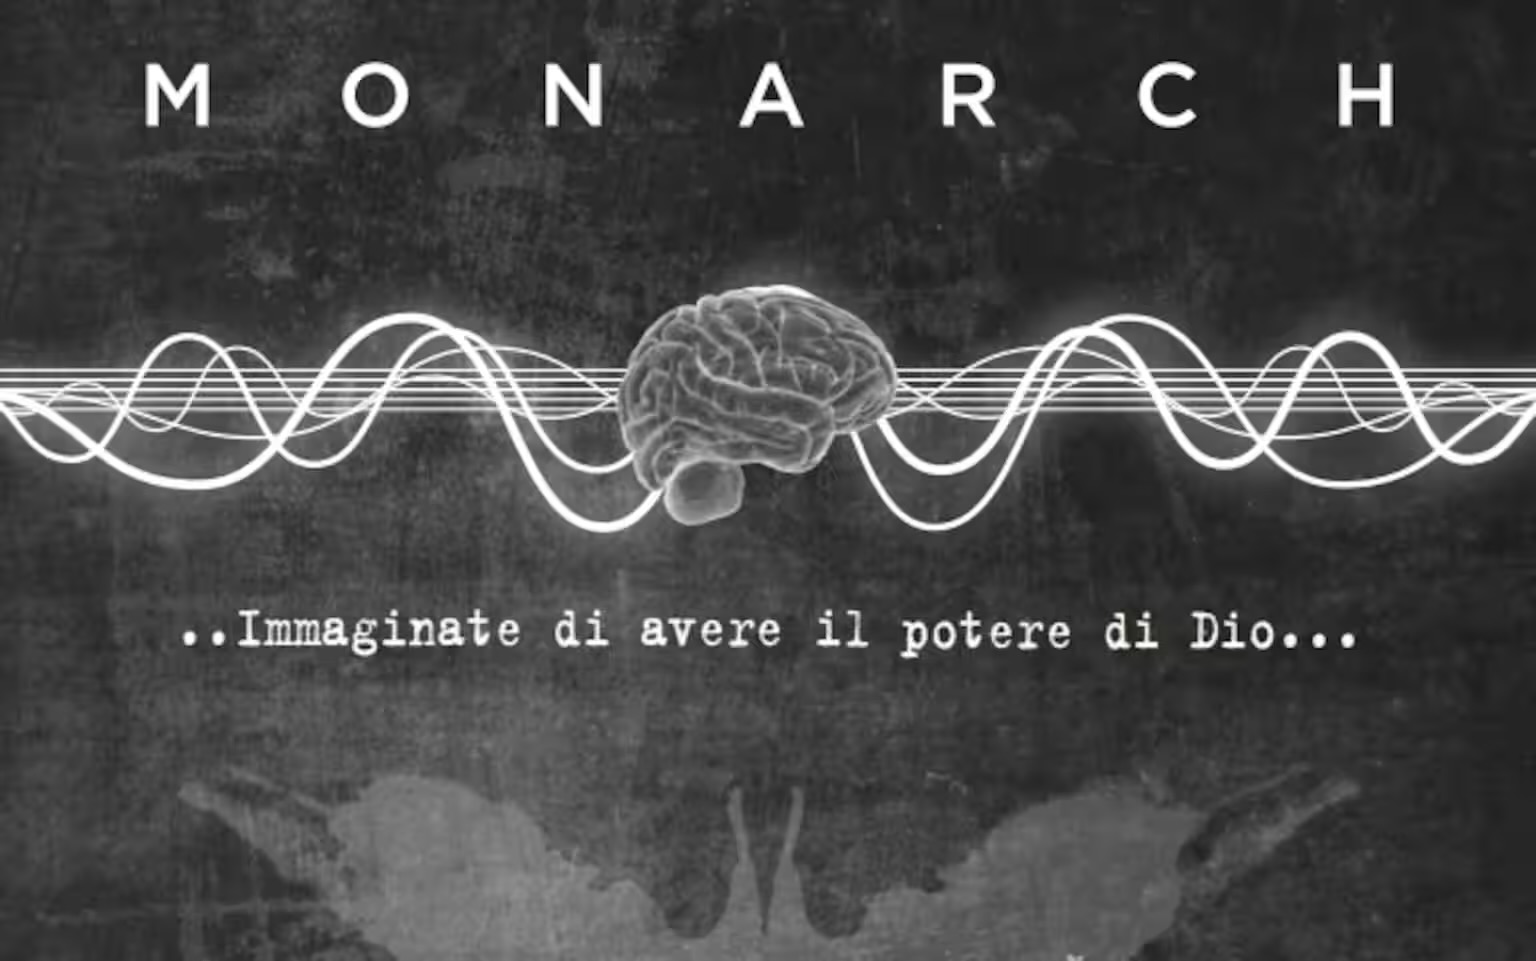 Fantascienza, action e horror s’incontrano nella serie tutta italiana Monarch